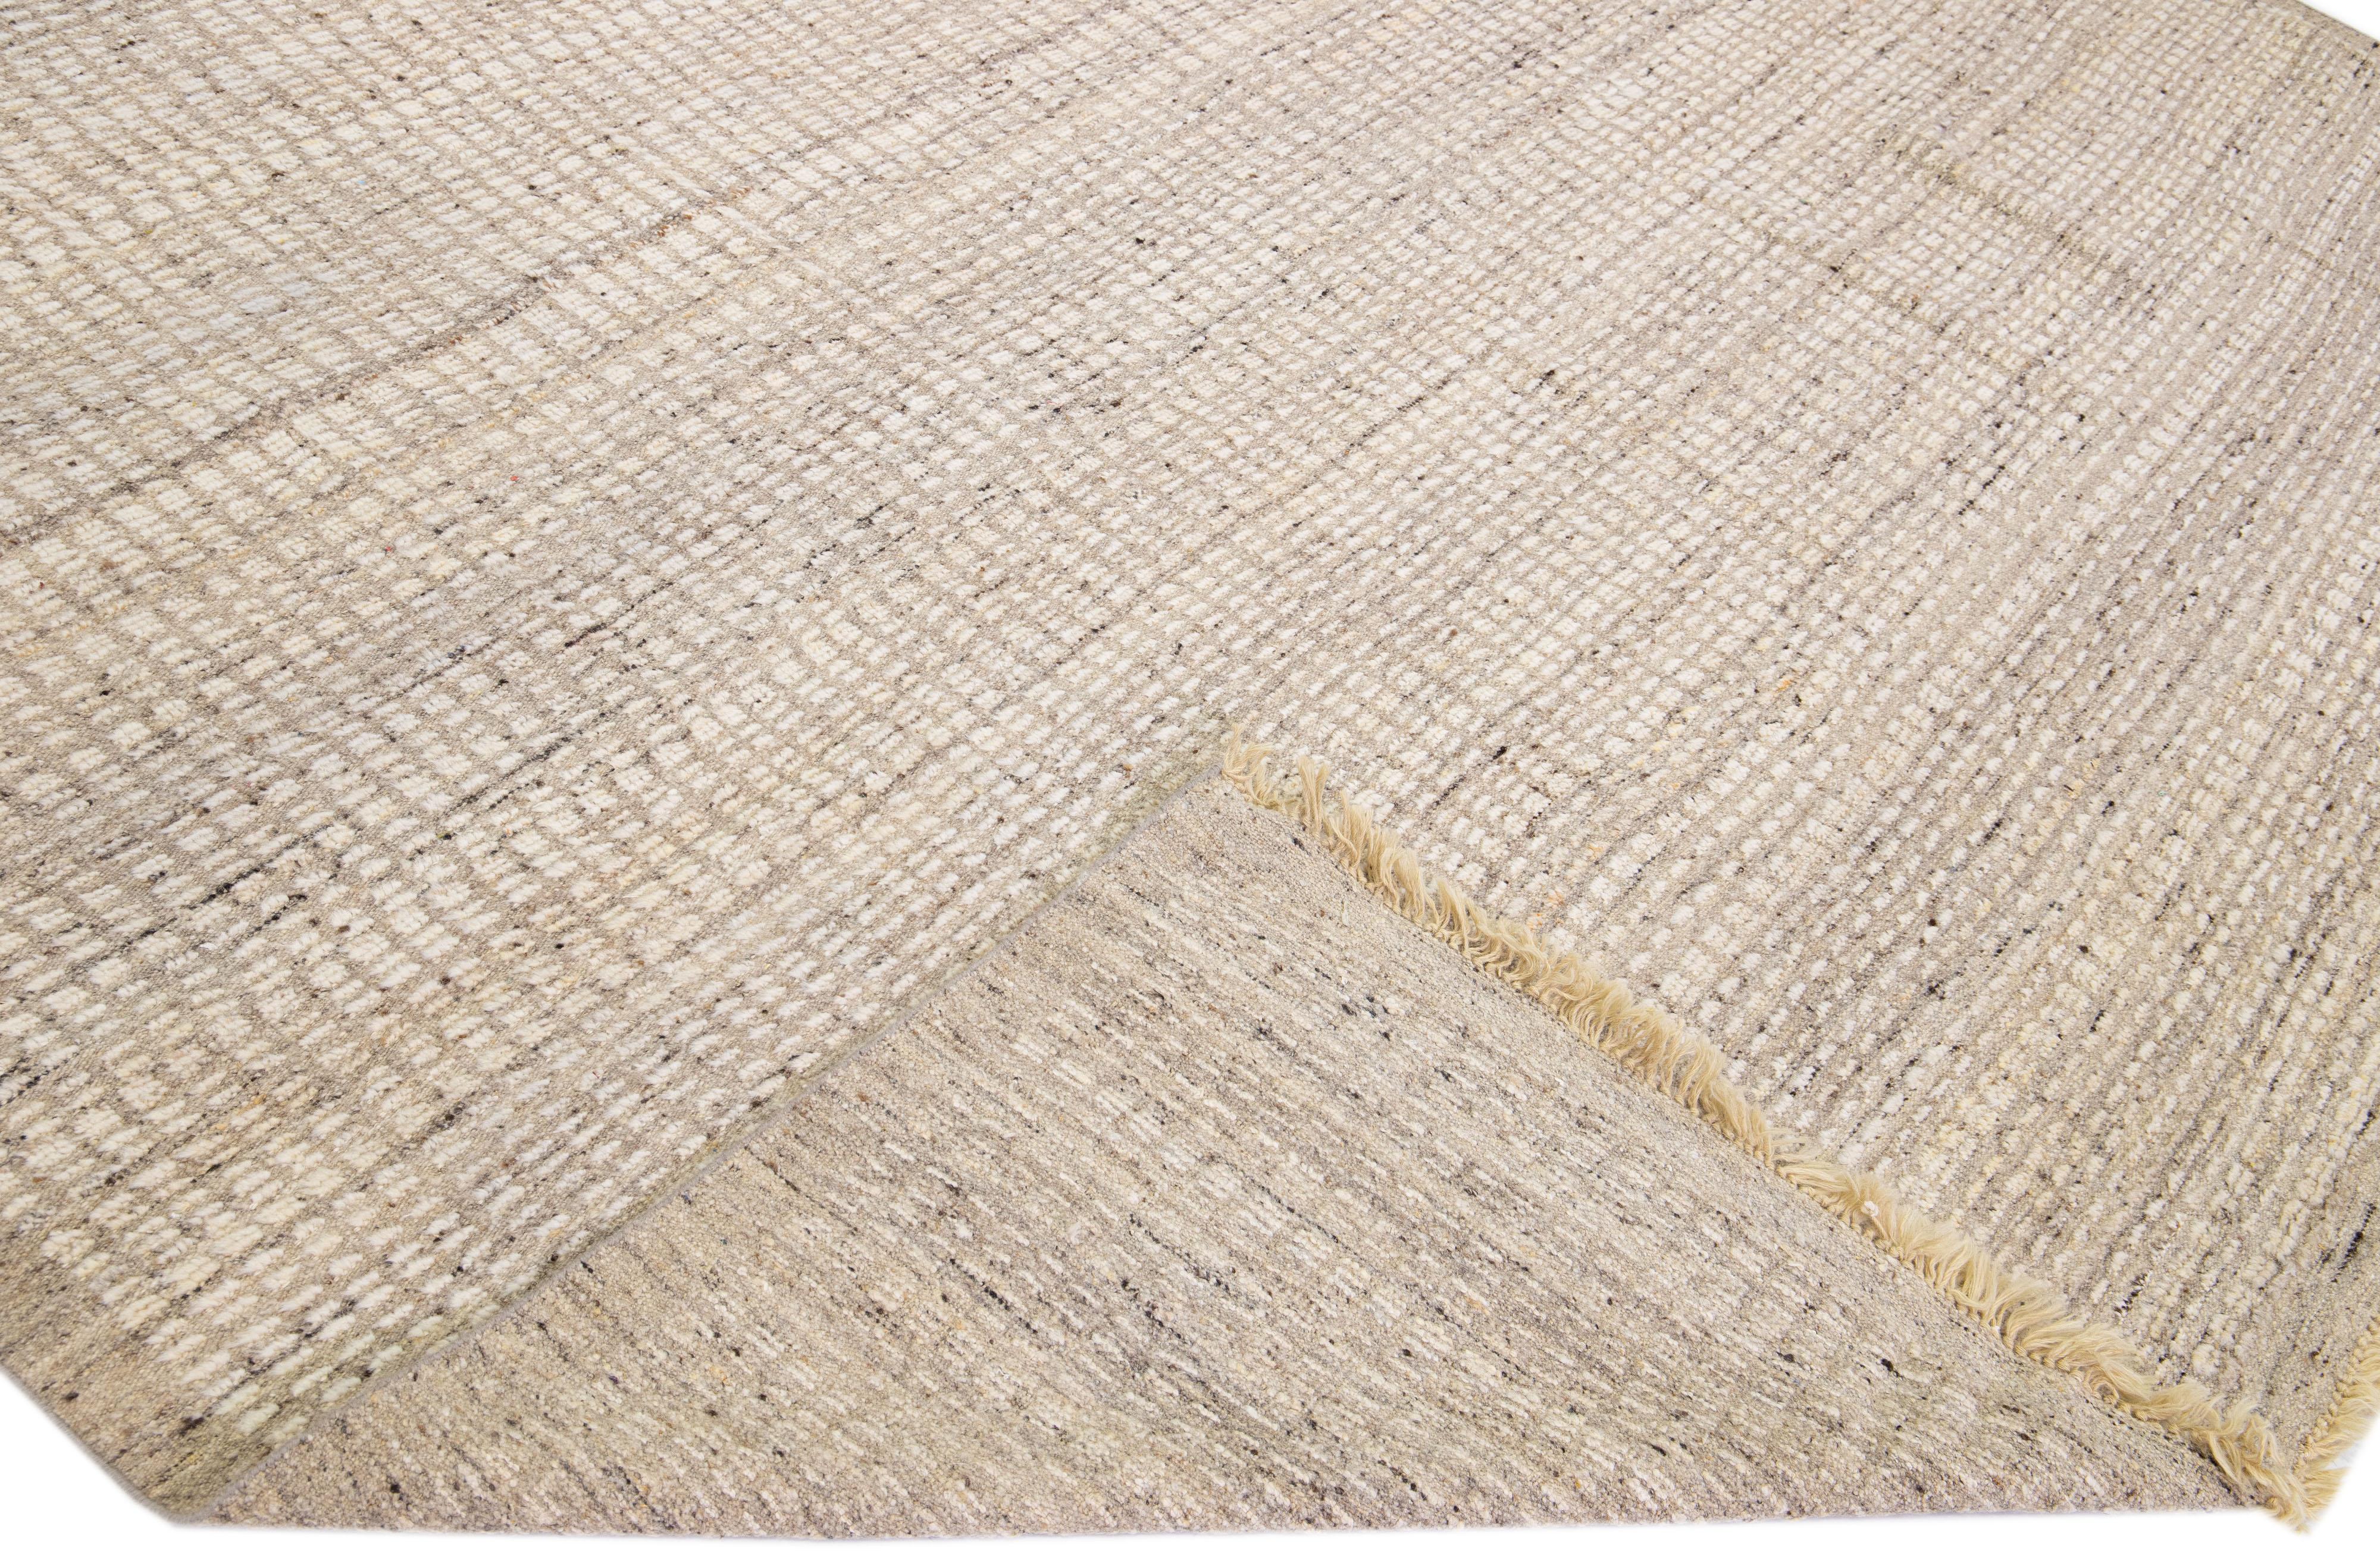 Magnifique tapis moderne en laine nouée à la main de style marocain avec un champ beige et brun clair. Cette pièce présente un magnifique motif géométrique subtil avec des franges sur les extrémités supérieure et inférieure.

Ce tapis mesure :